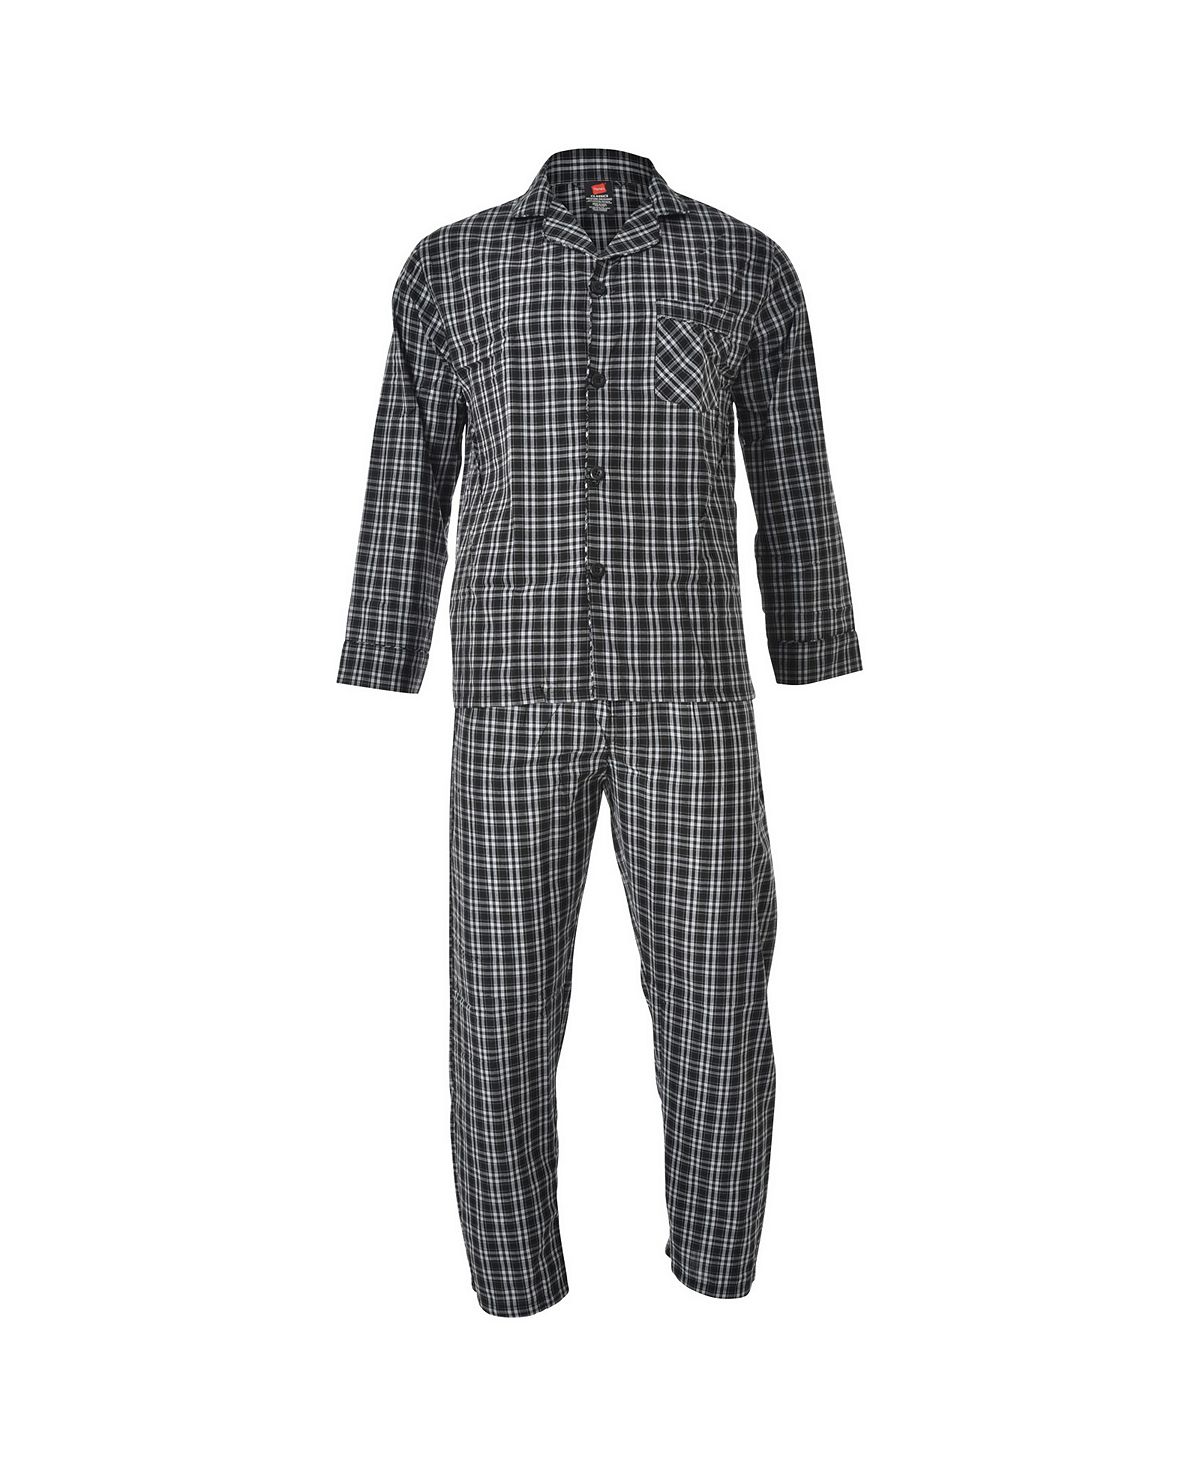 Мужской пижамный комплект из ткани Hanes большого и высокого размера из ткани ПВХ Hanes Platinum пижамный комплект big